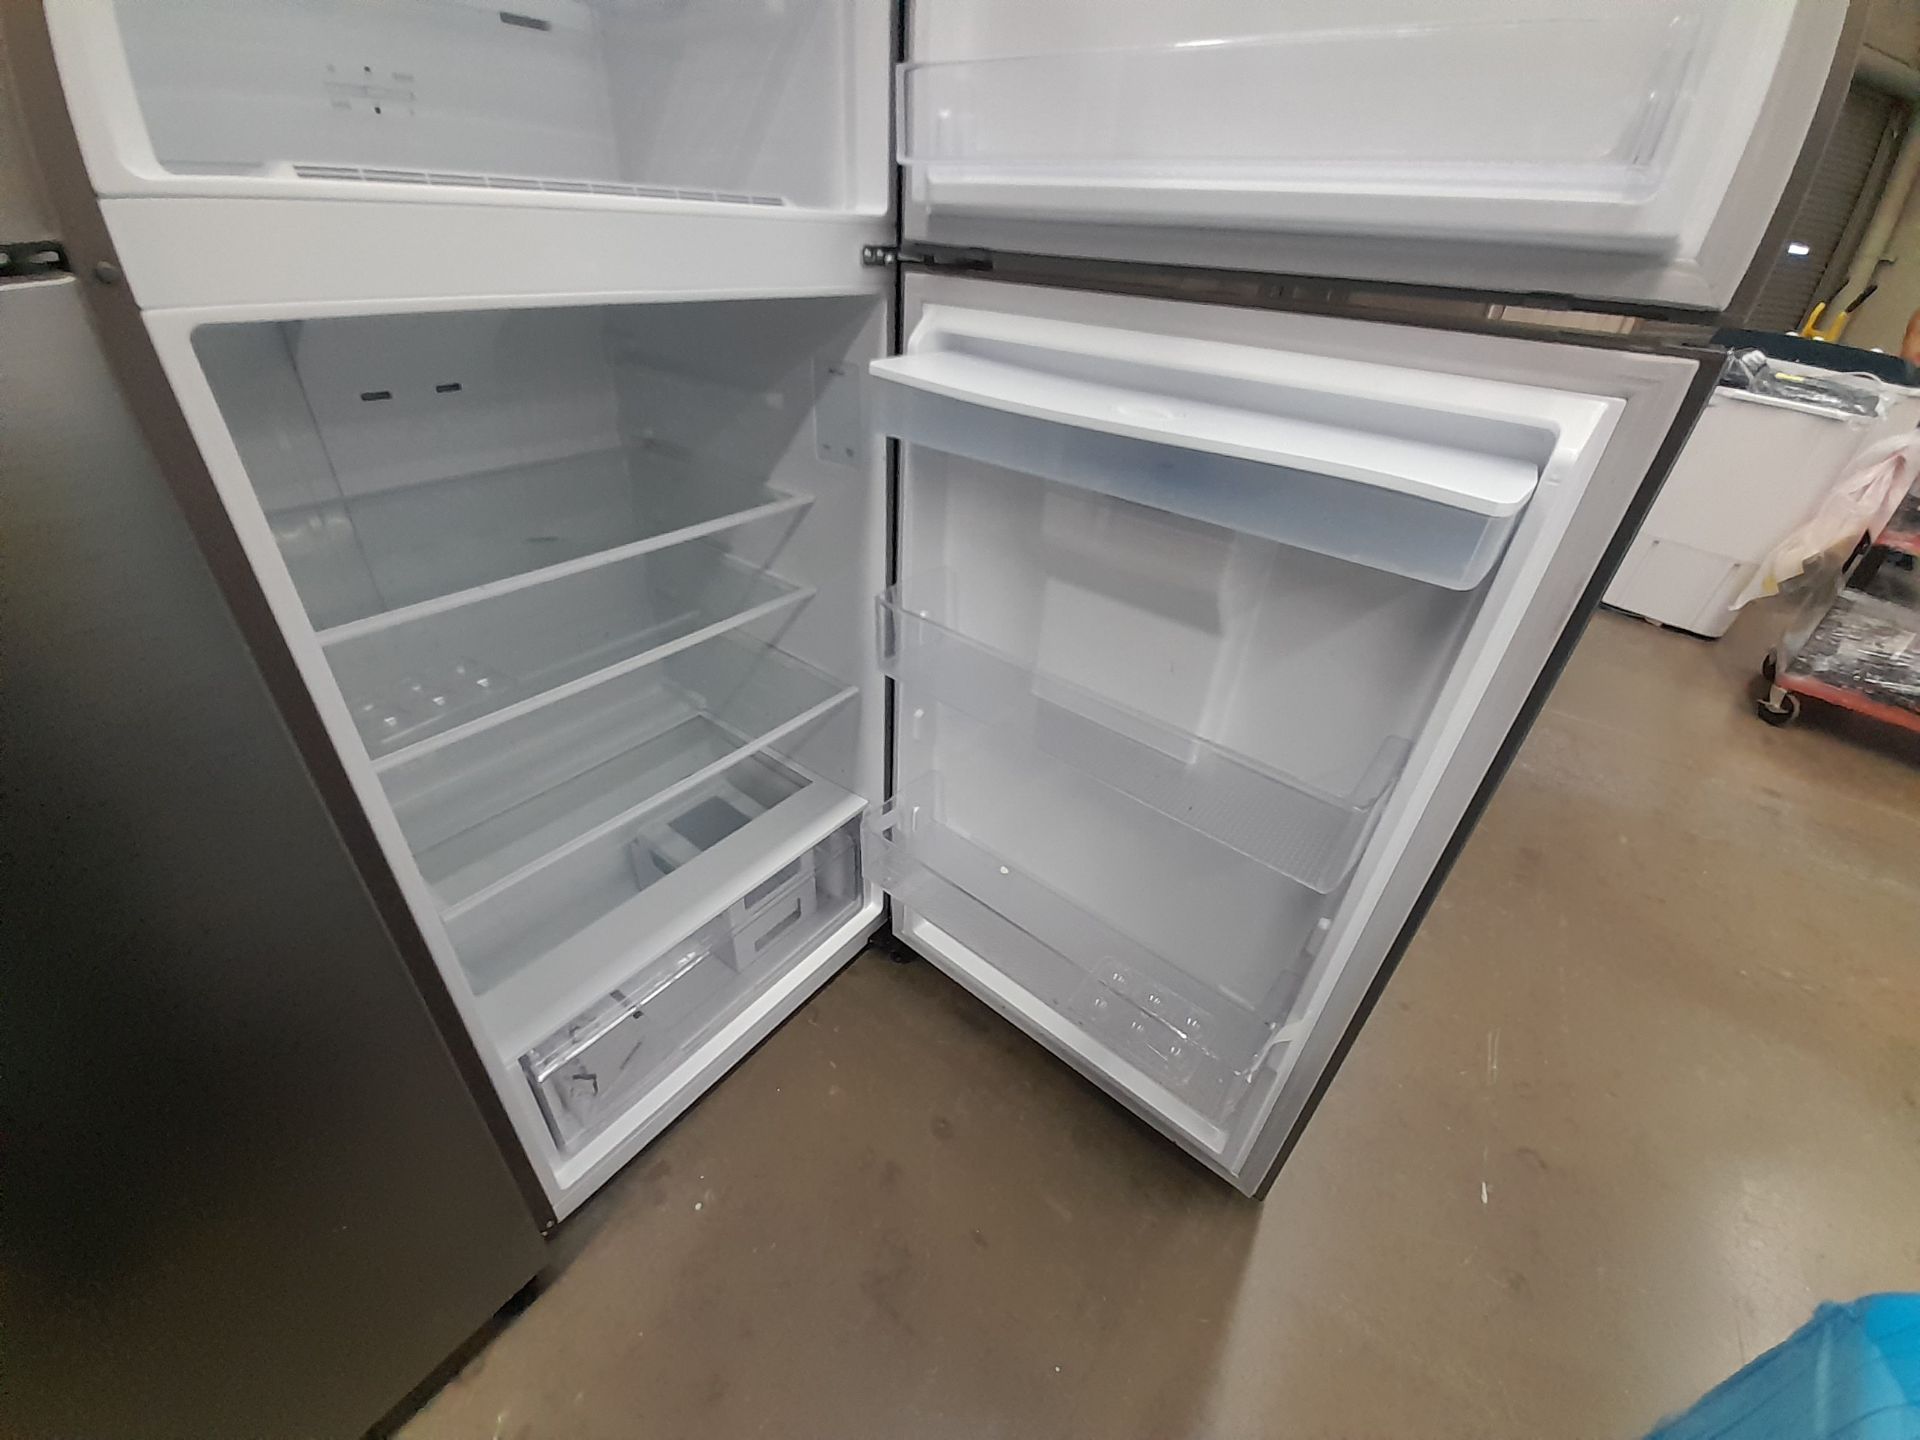 Lote de 2 refrigeradores contiene: 1 refrigerador con dispensador de agua Marca SAMSUNG, Modelo - Image 5 of 8